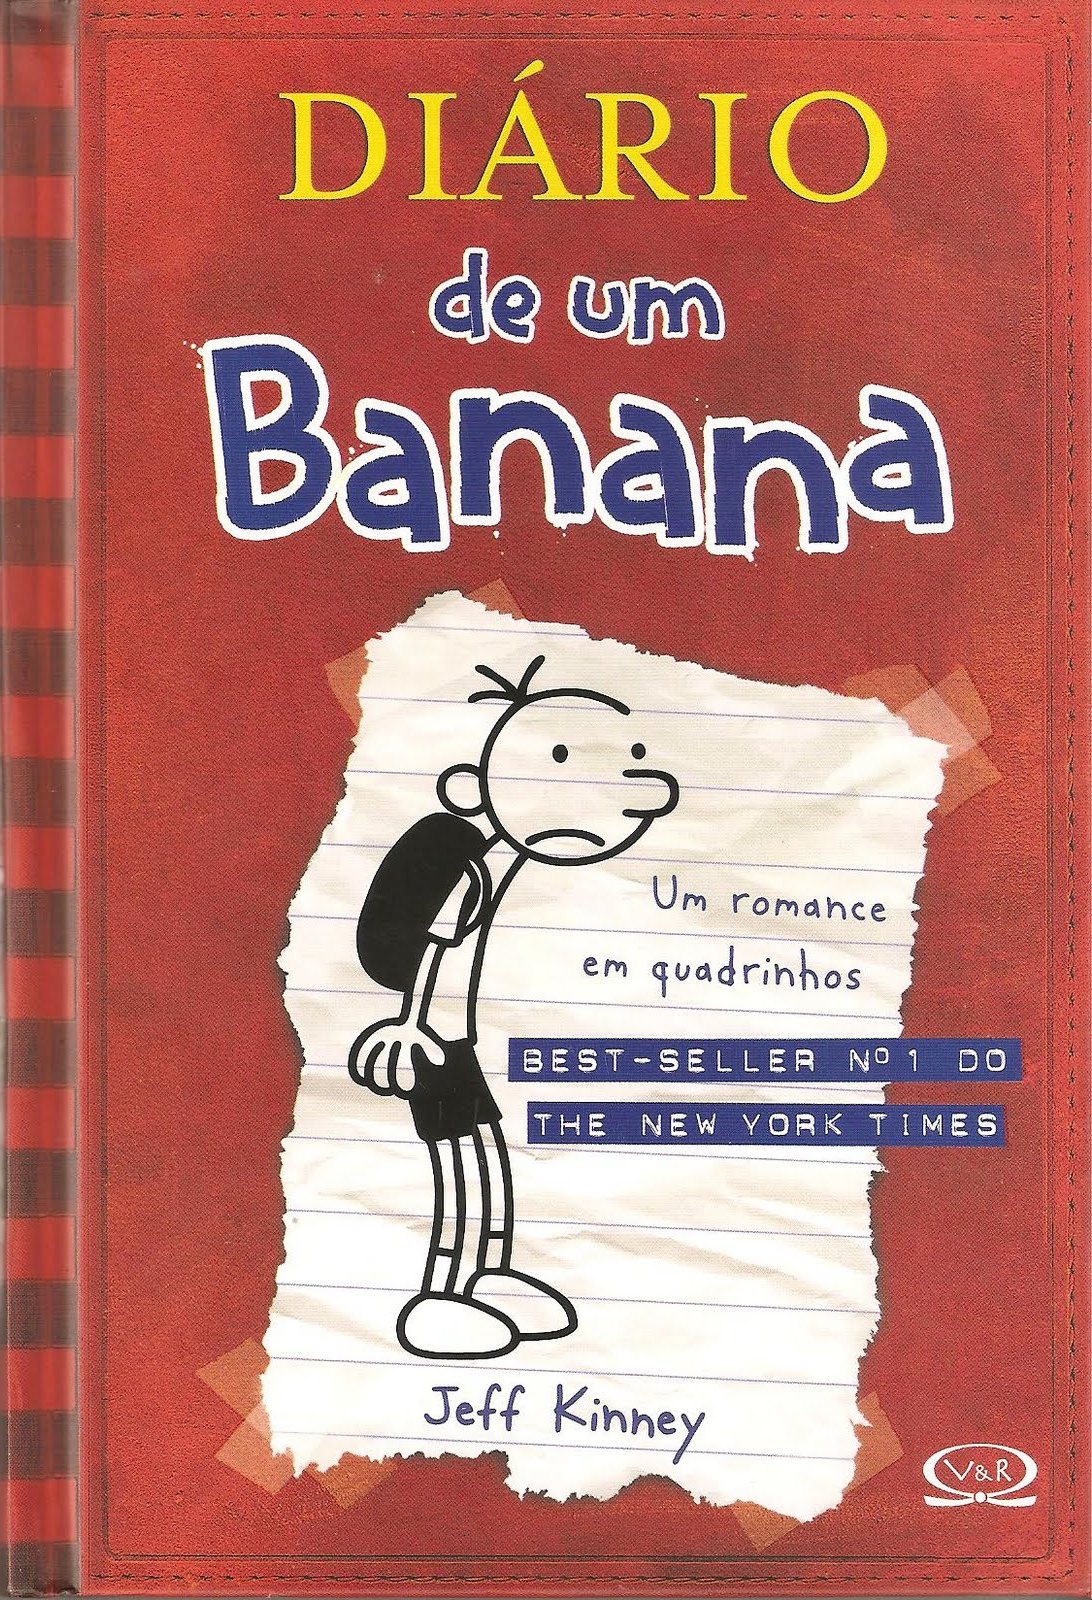 Diário de um Banana - O Livro do Filme